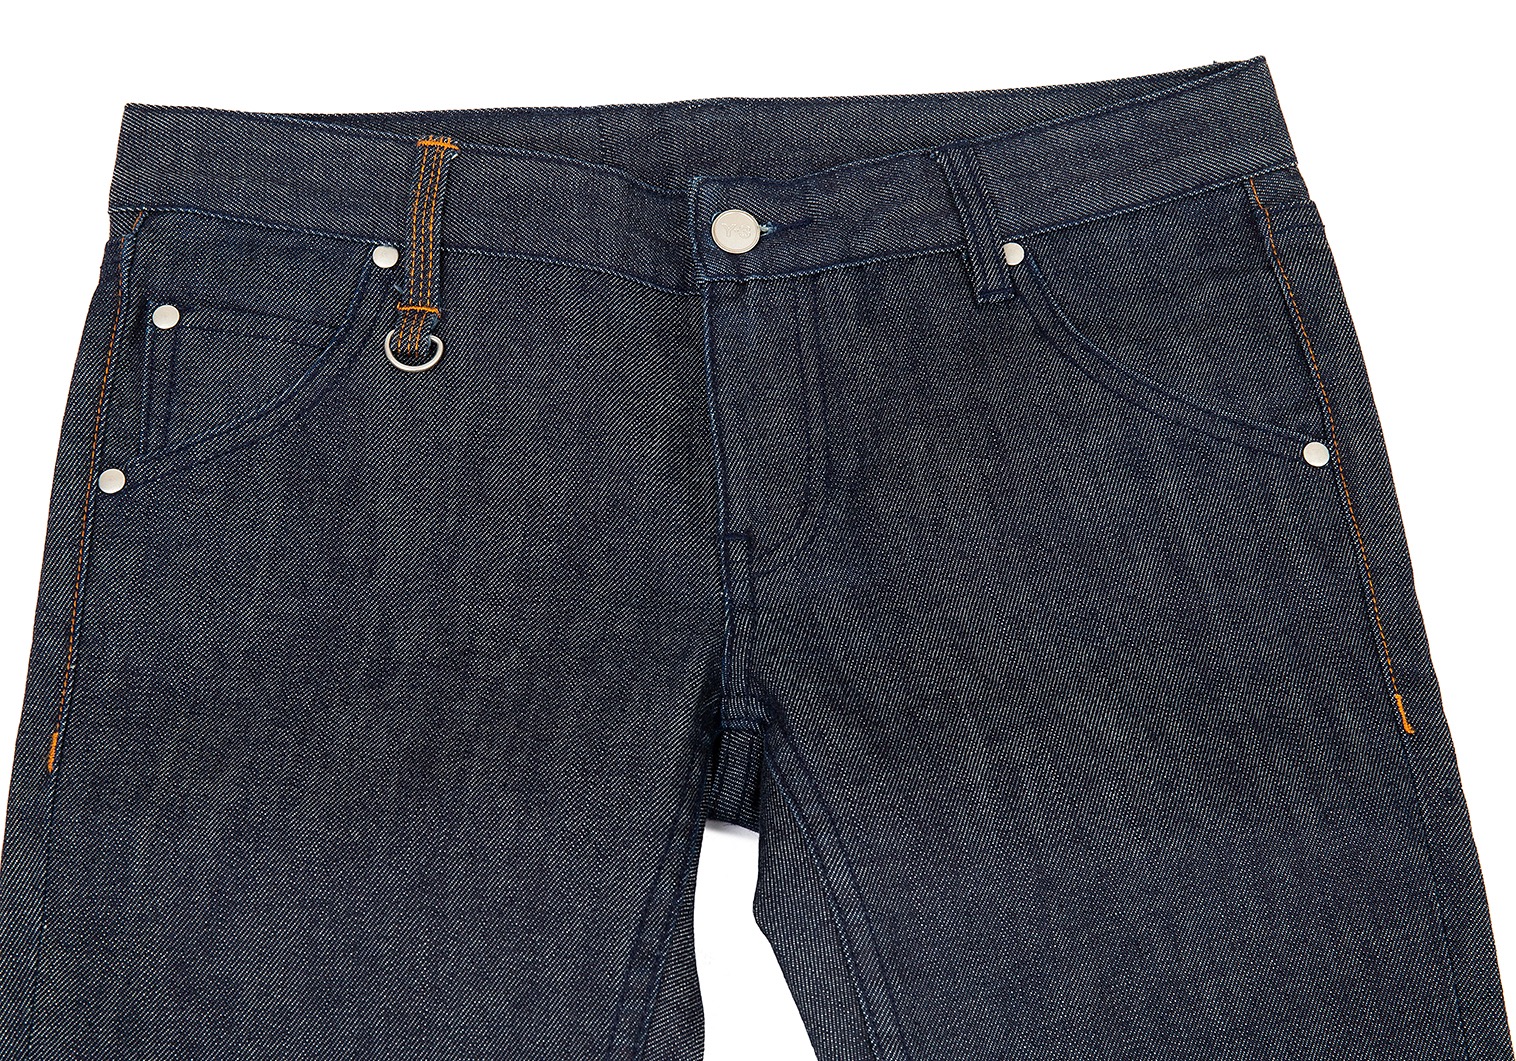 Y-3 Back Zip Pocket Jeans Indigo 27 | PLAYFUL